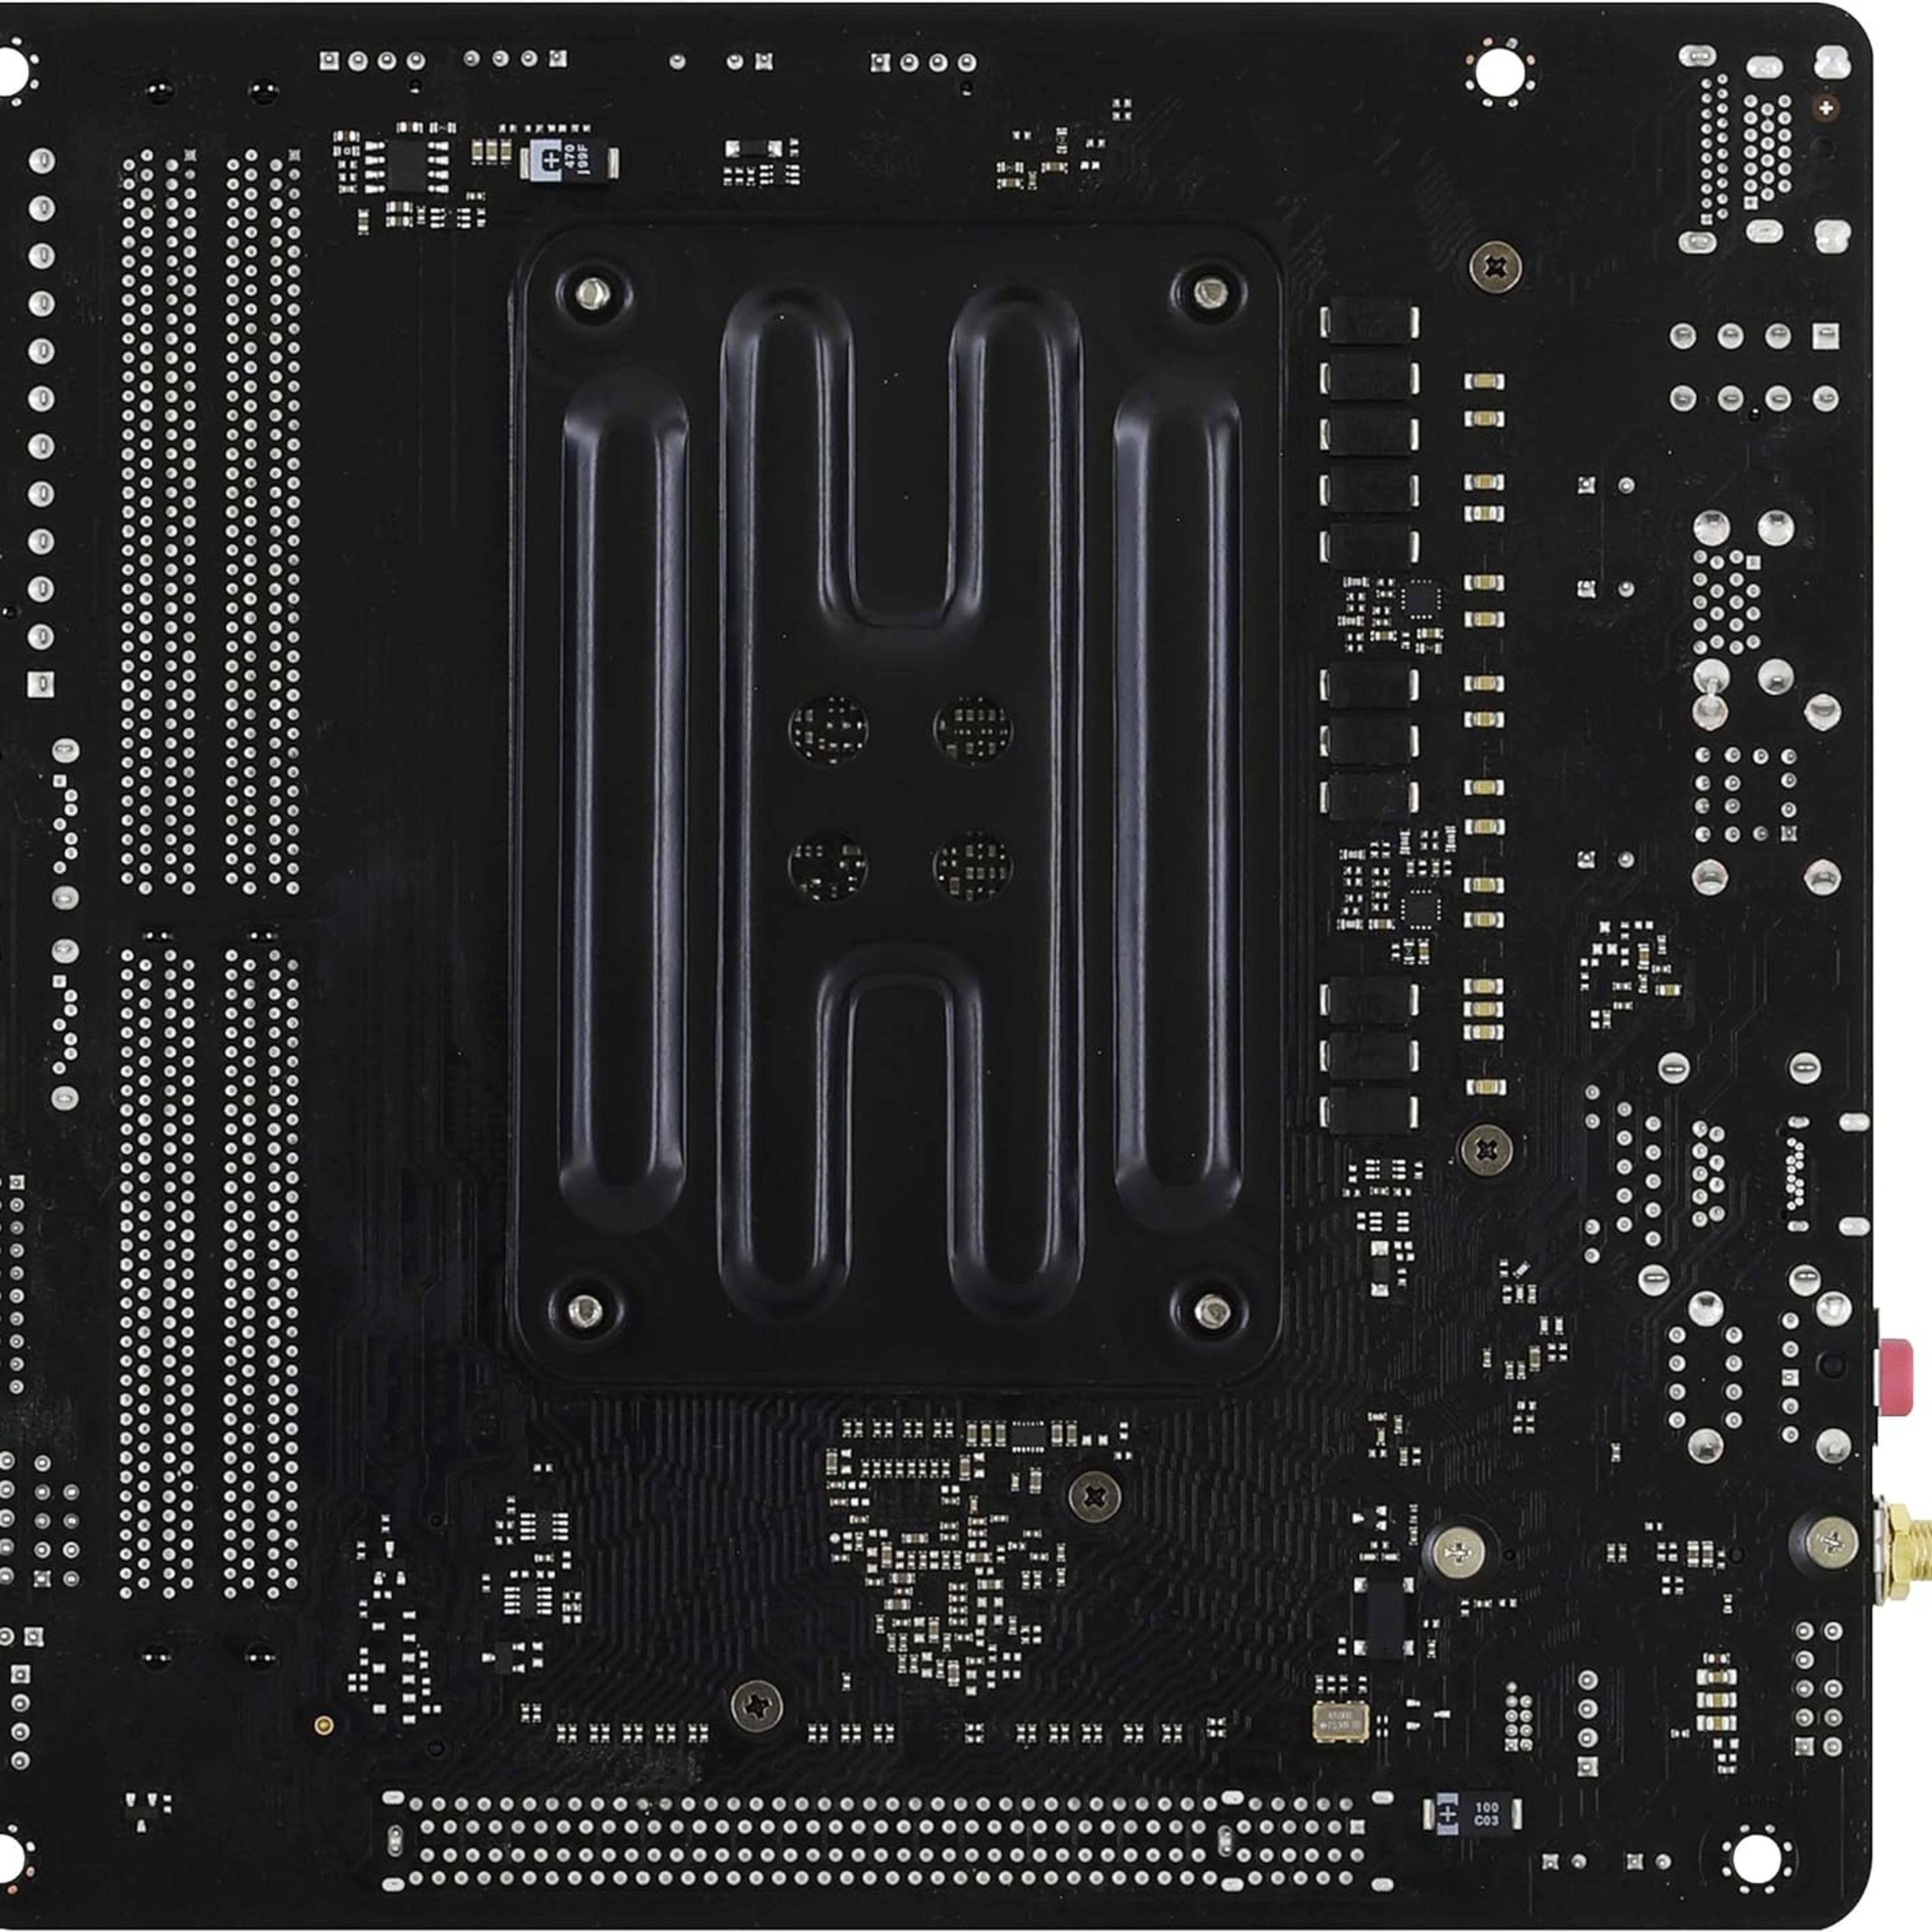 BNIB ASRock A520M-ITX/AC Mini-ITX computer motherboard AMD AM4